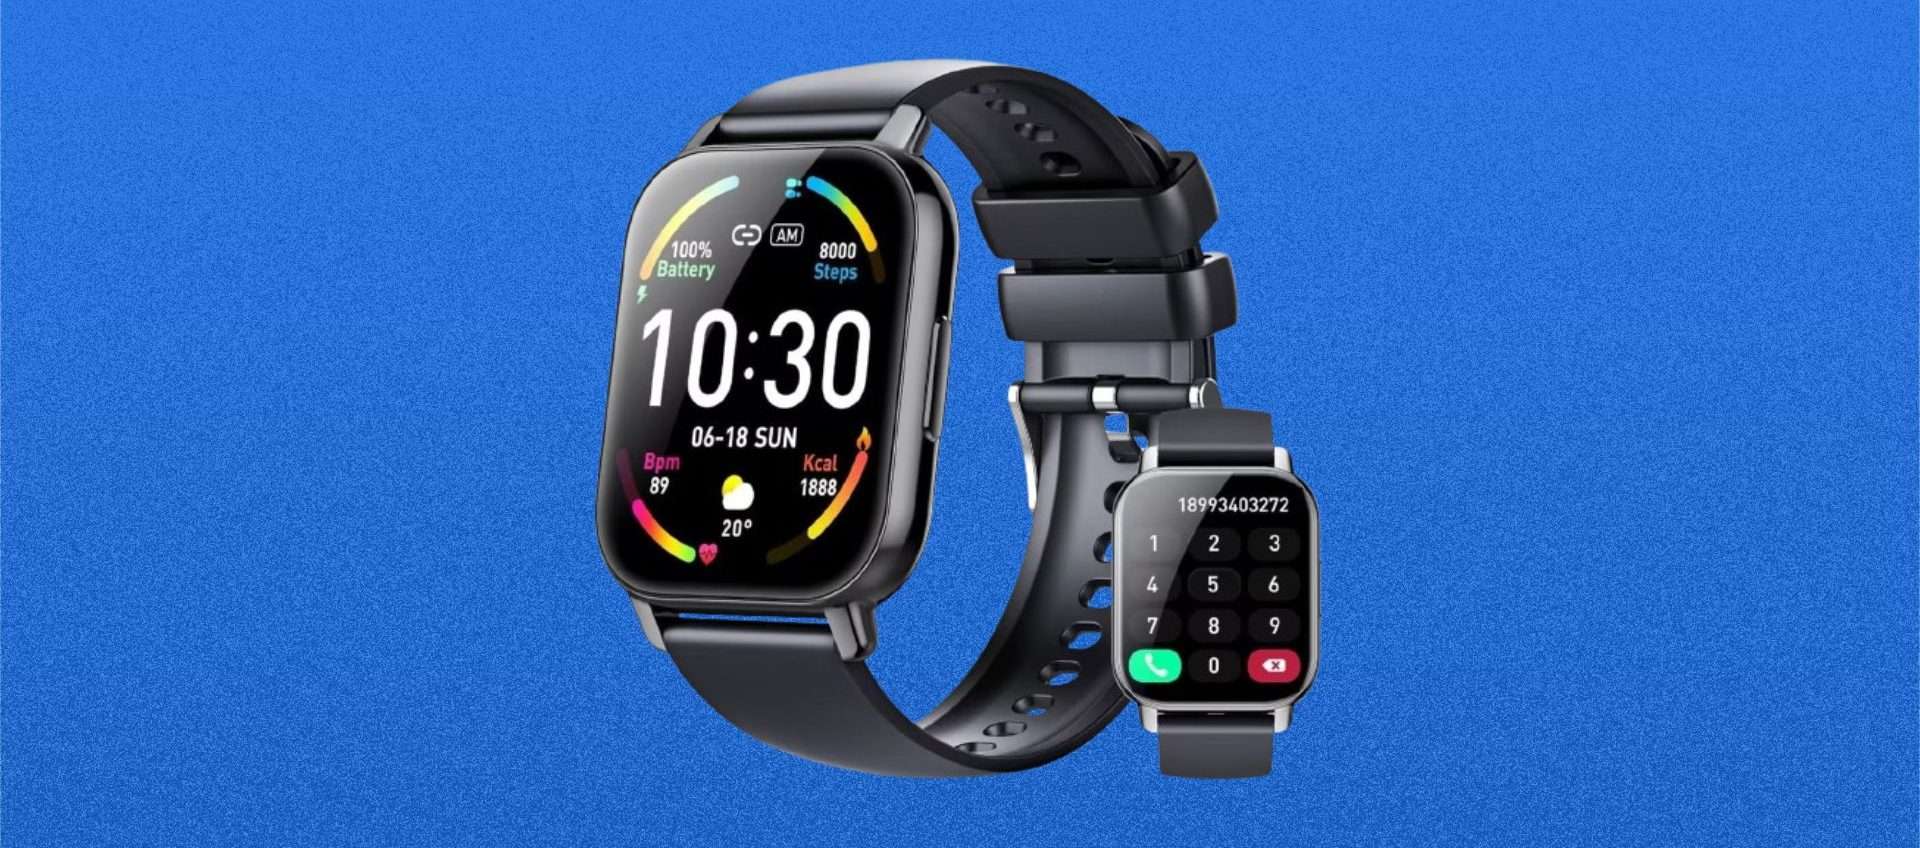 Smartwatch in offerta su Amazon, prezzo SCANDALOSO: tuo a soli 22€